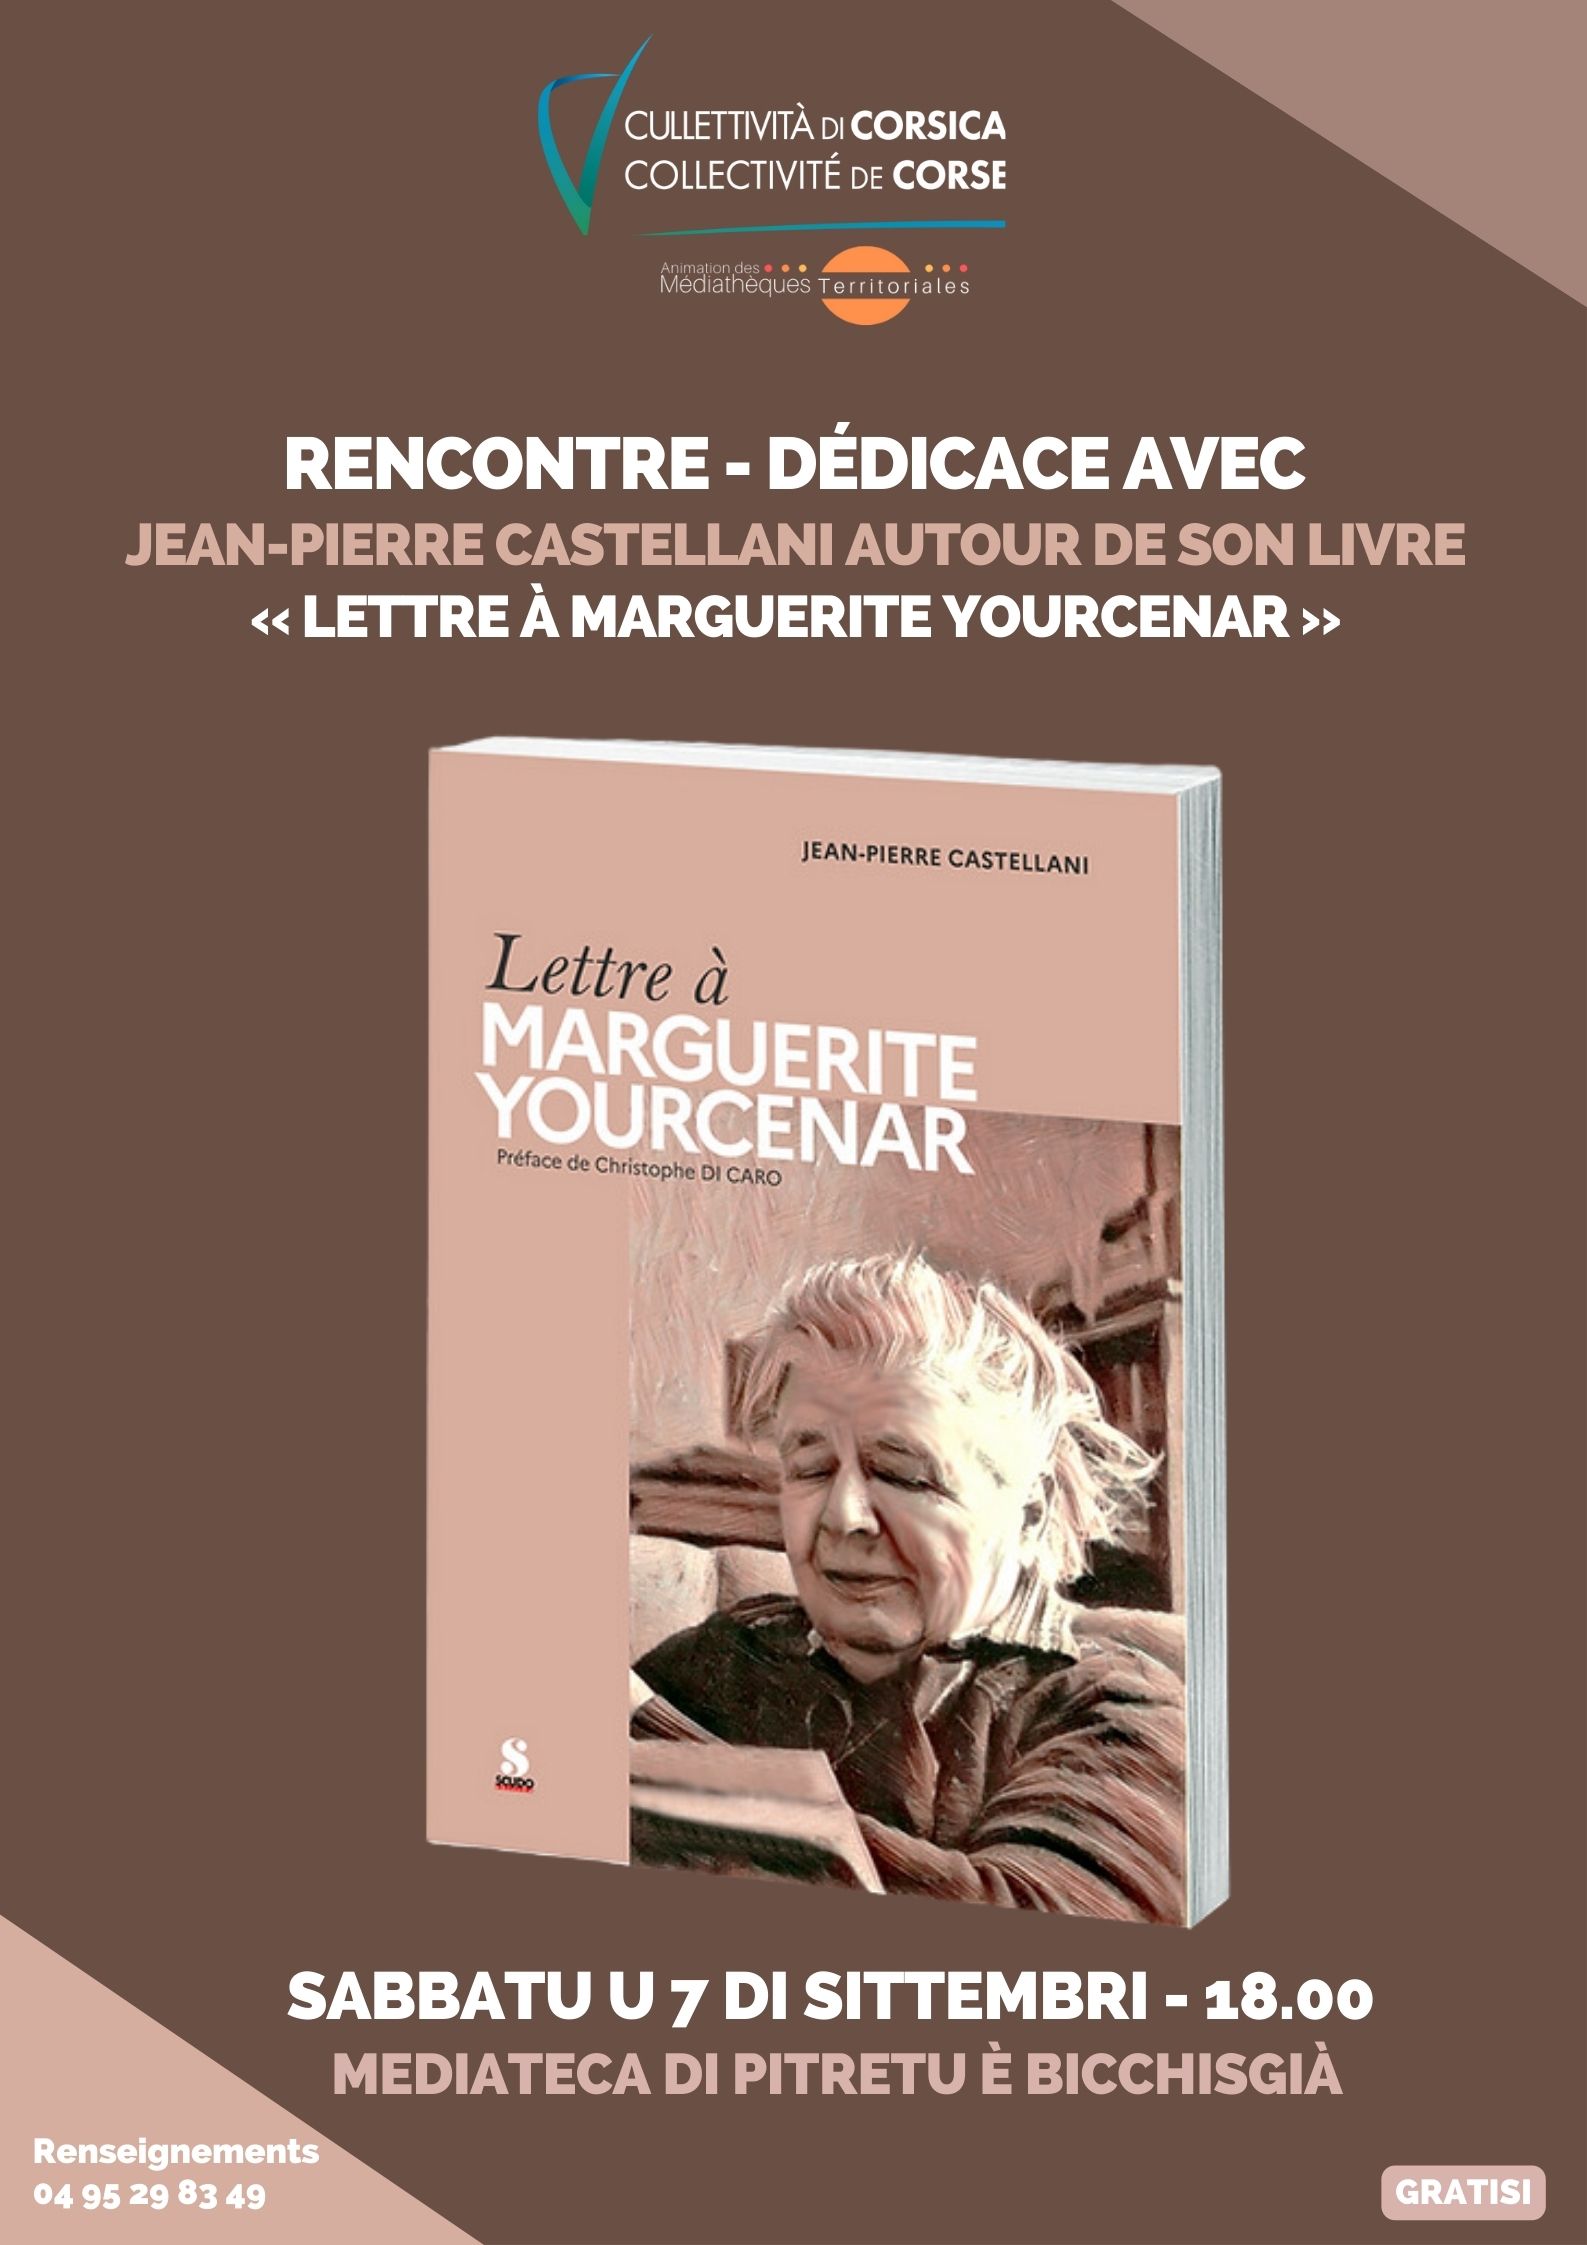 Rencontre / dédicace avec Jean-Pierre Castellani autour de son livre « Lettre à Marguerite Yourcenar »  - Mediateca di Pitretu è Bicchisgià